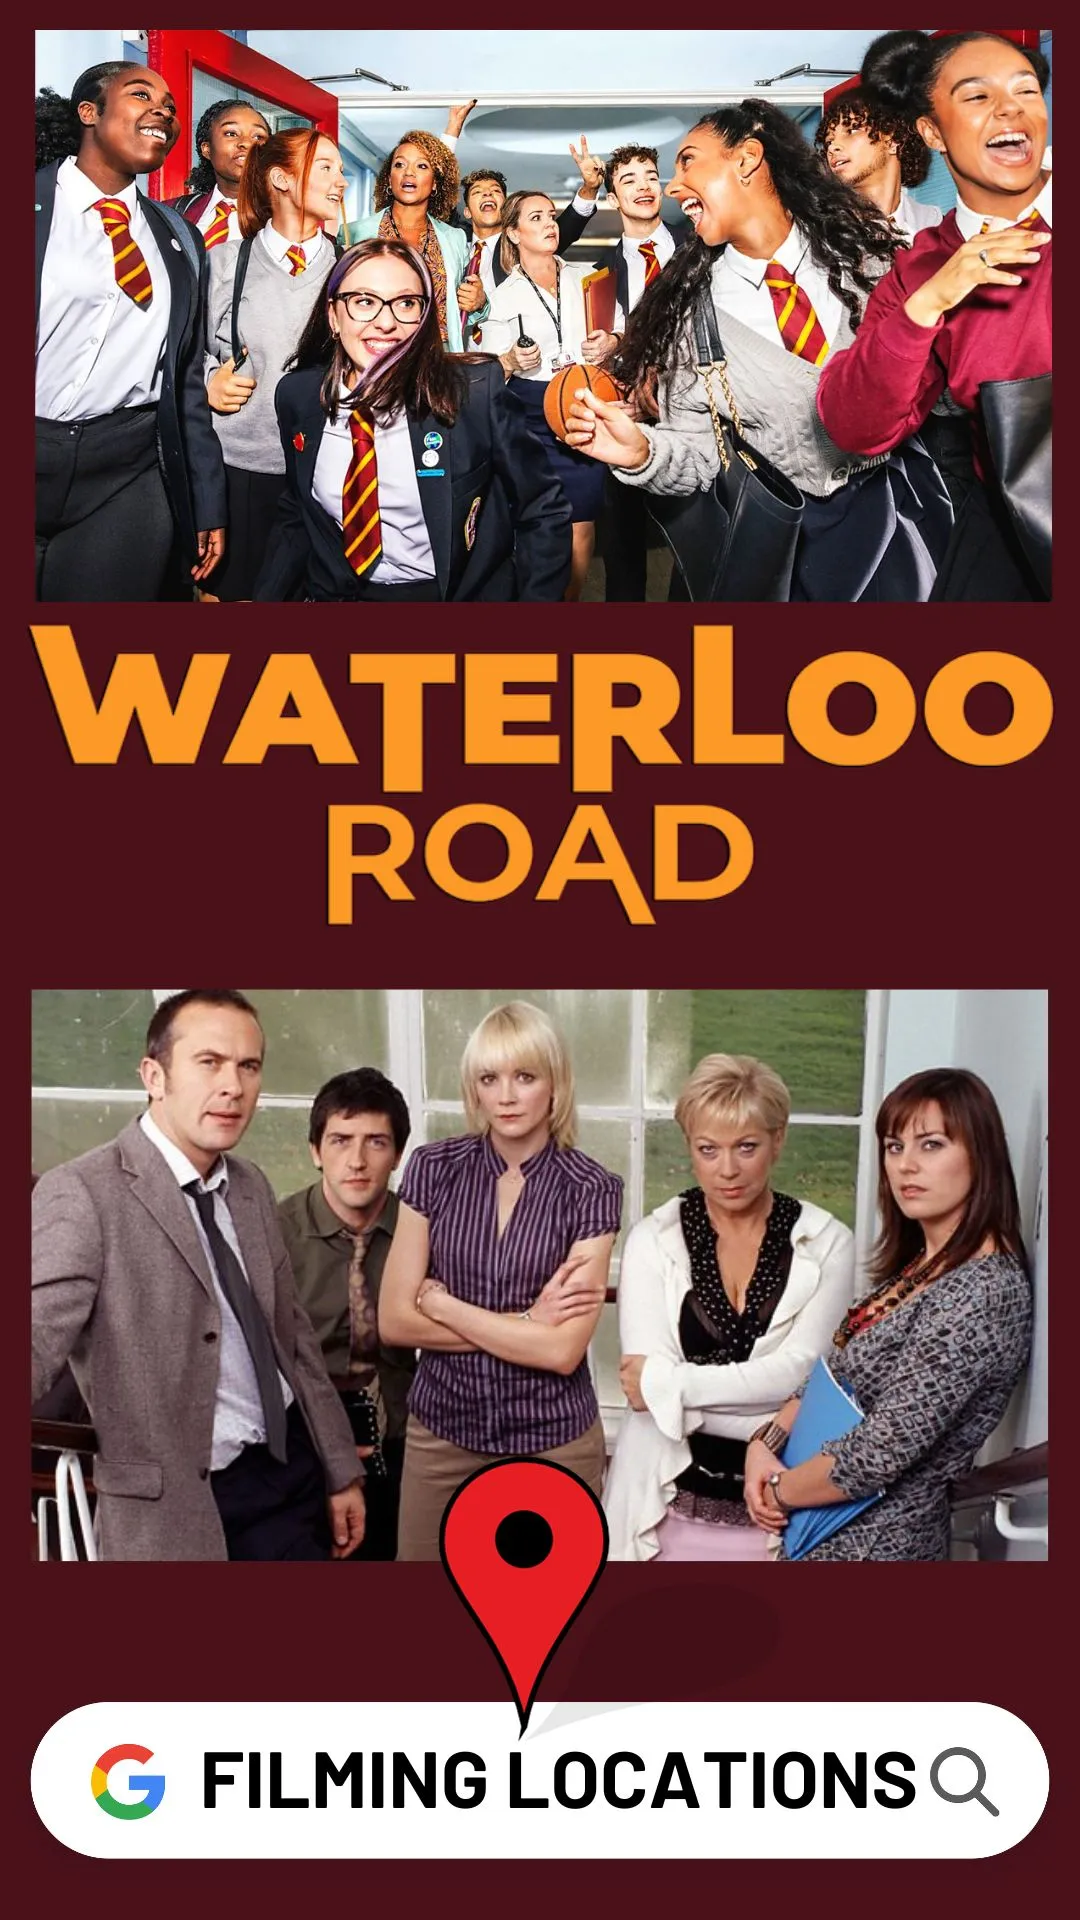 Waterloo Road Season 13 Filming Locations